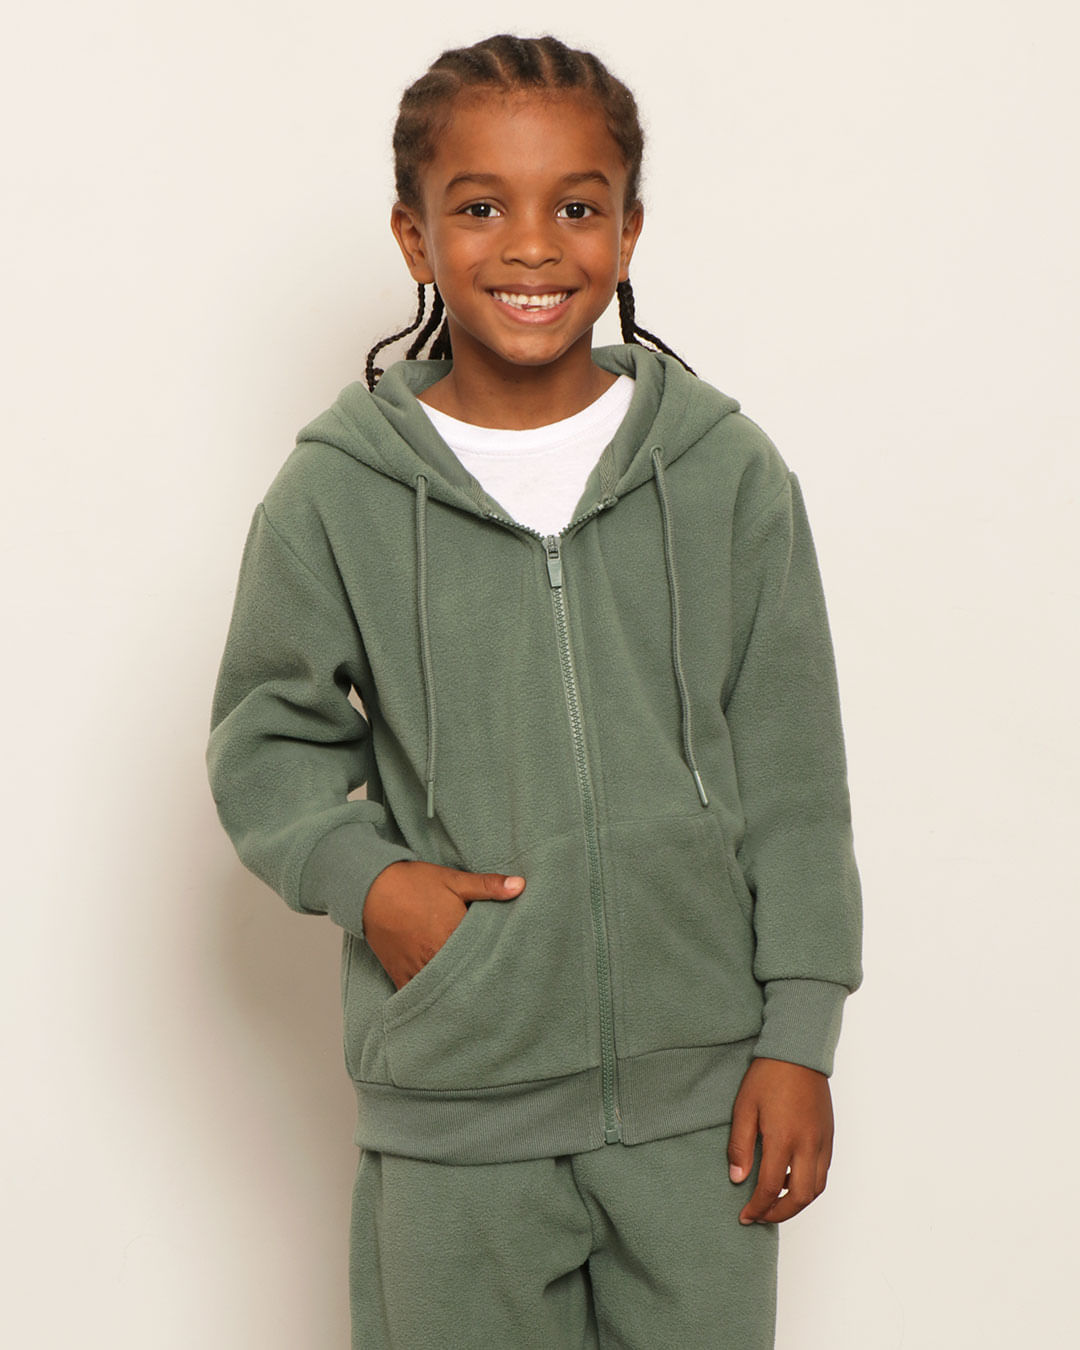 Jaqueta Infantil Fleece Com Capuz Verde